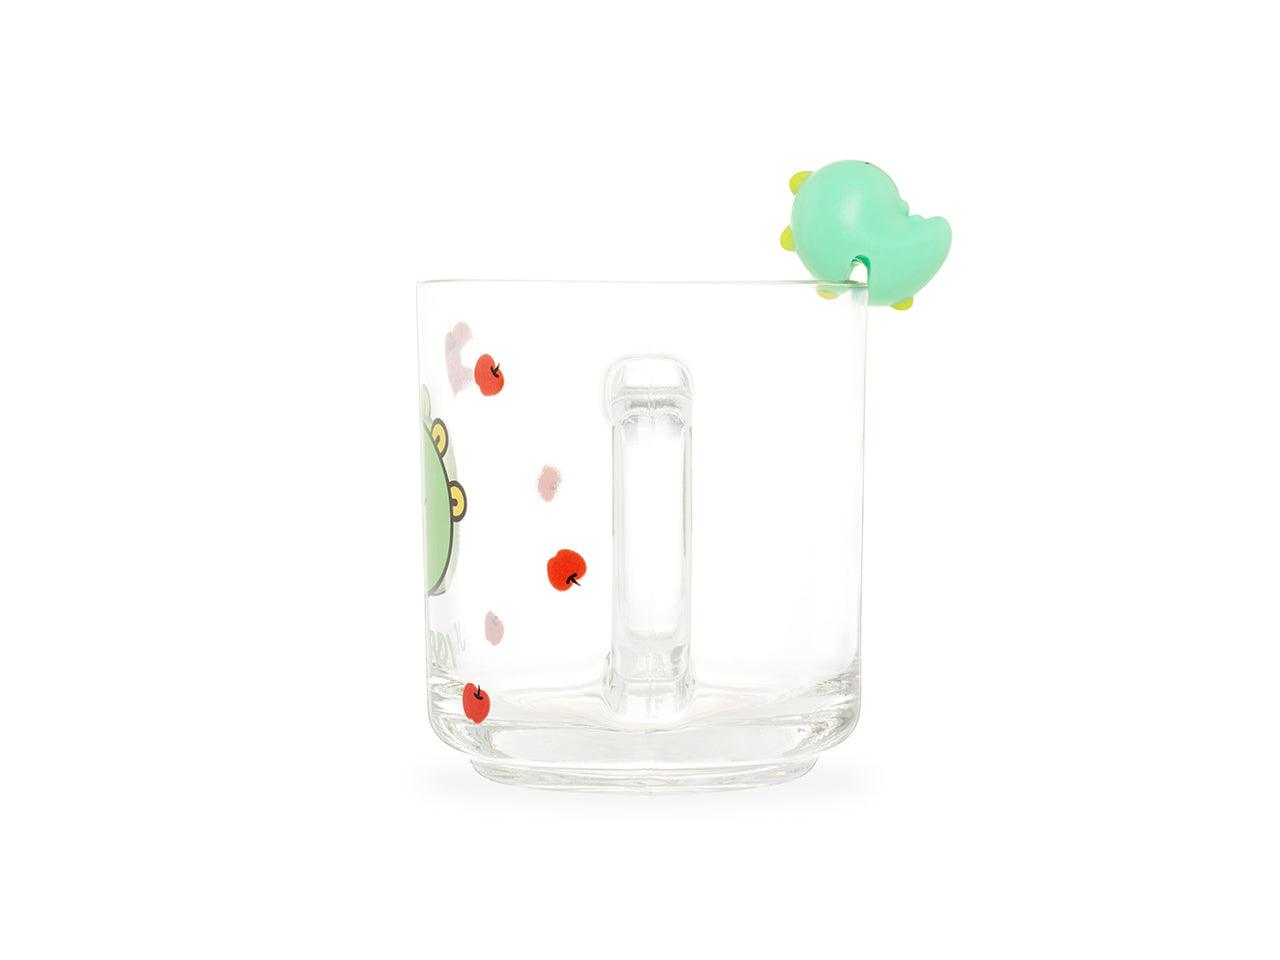 Kakao Friends Jordy Apple Figure Glass Mug 玻璃杯 - SOUL SIMPLE HK